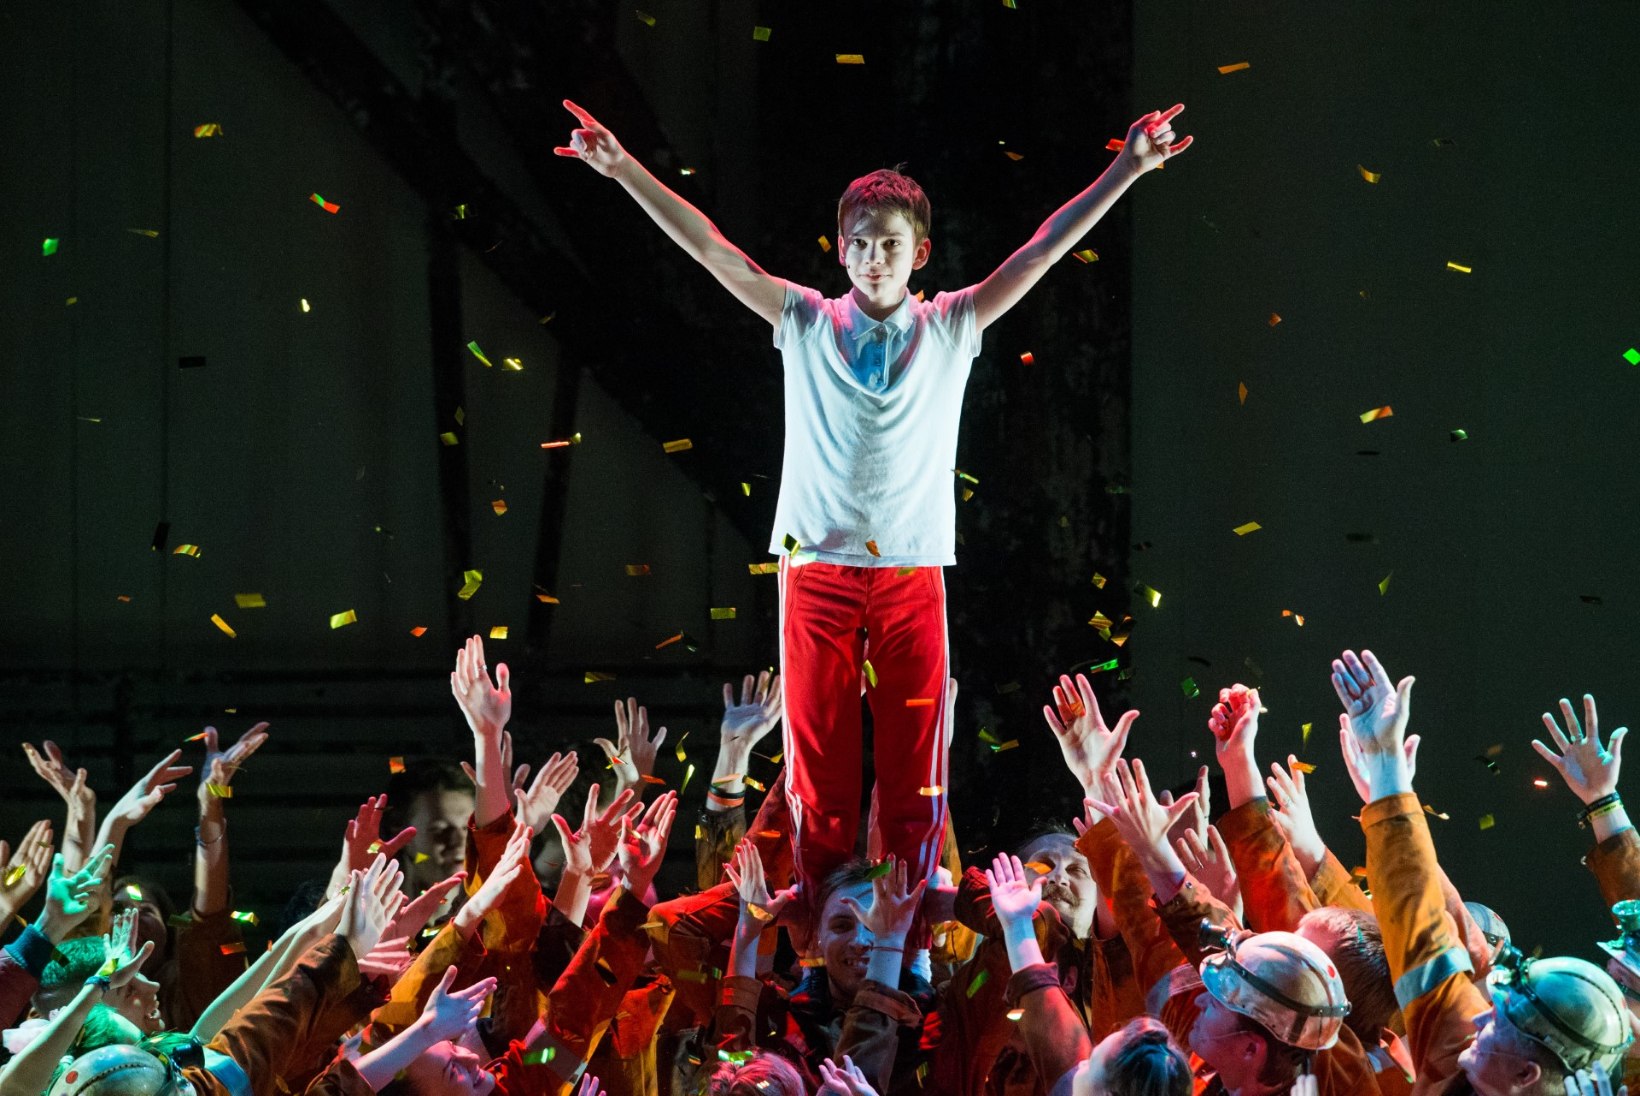 GALERII: maailmakuulus muusikal "Billy Elliot" esietendus Nordeas